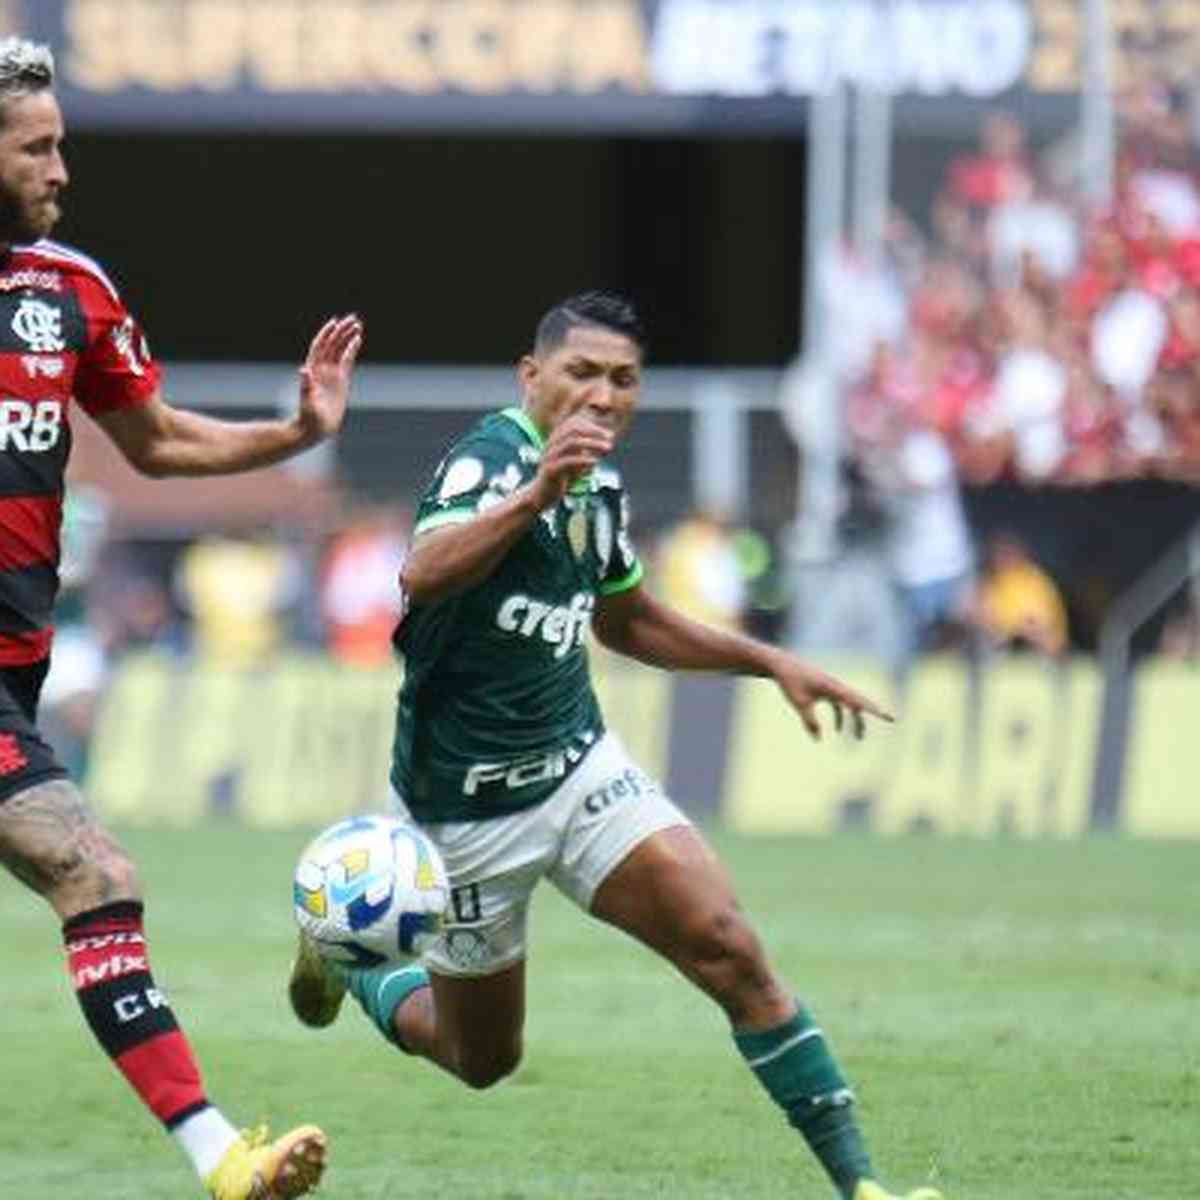 Palmeiras e Flamengo estão garantidos no novo Mundial de Clubes em 2025 em  2023